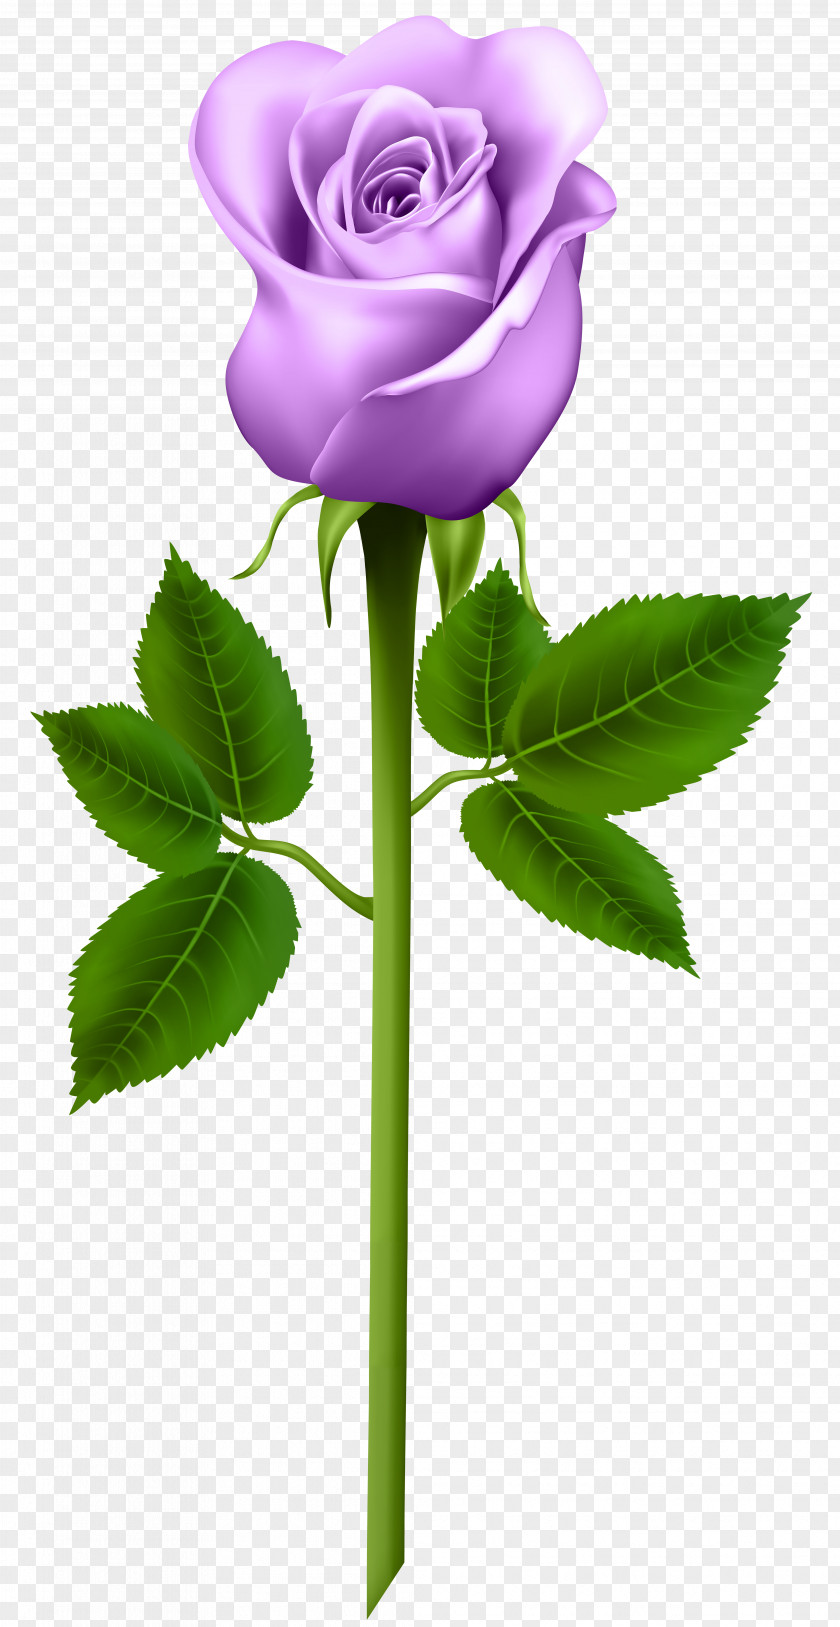 Purple Rose Transparent Image Clip Art PNG